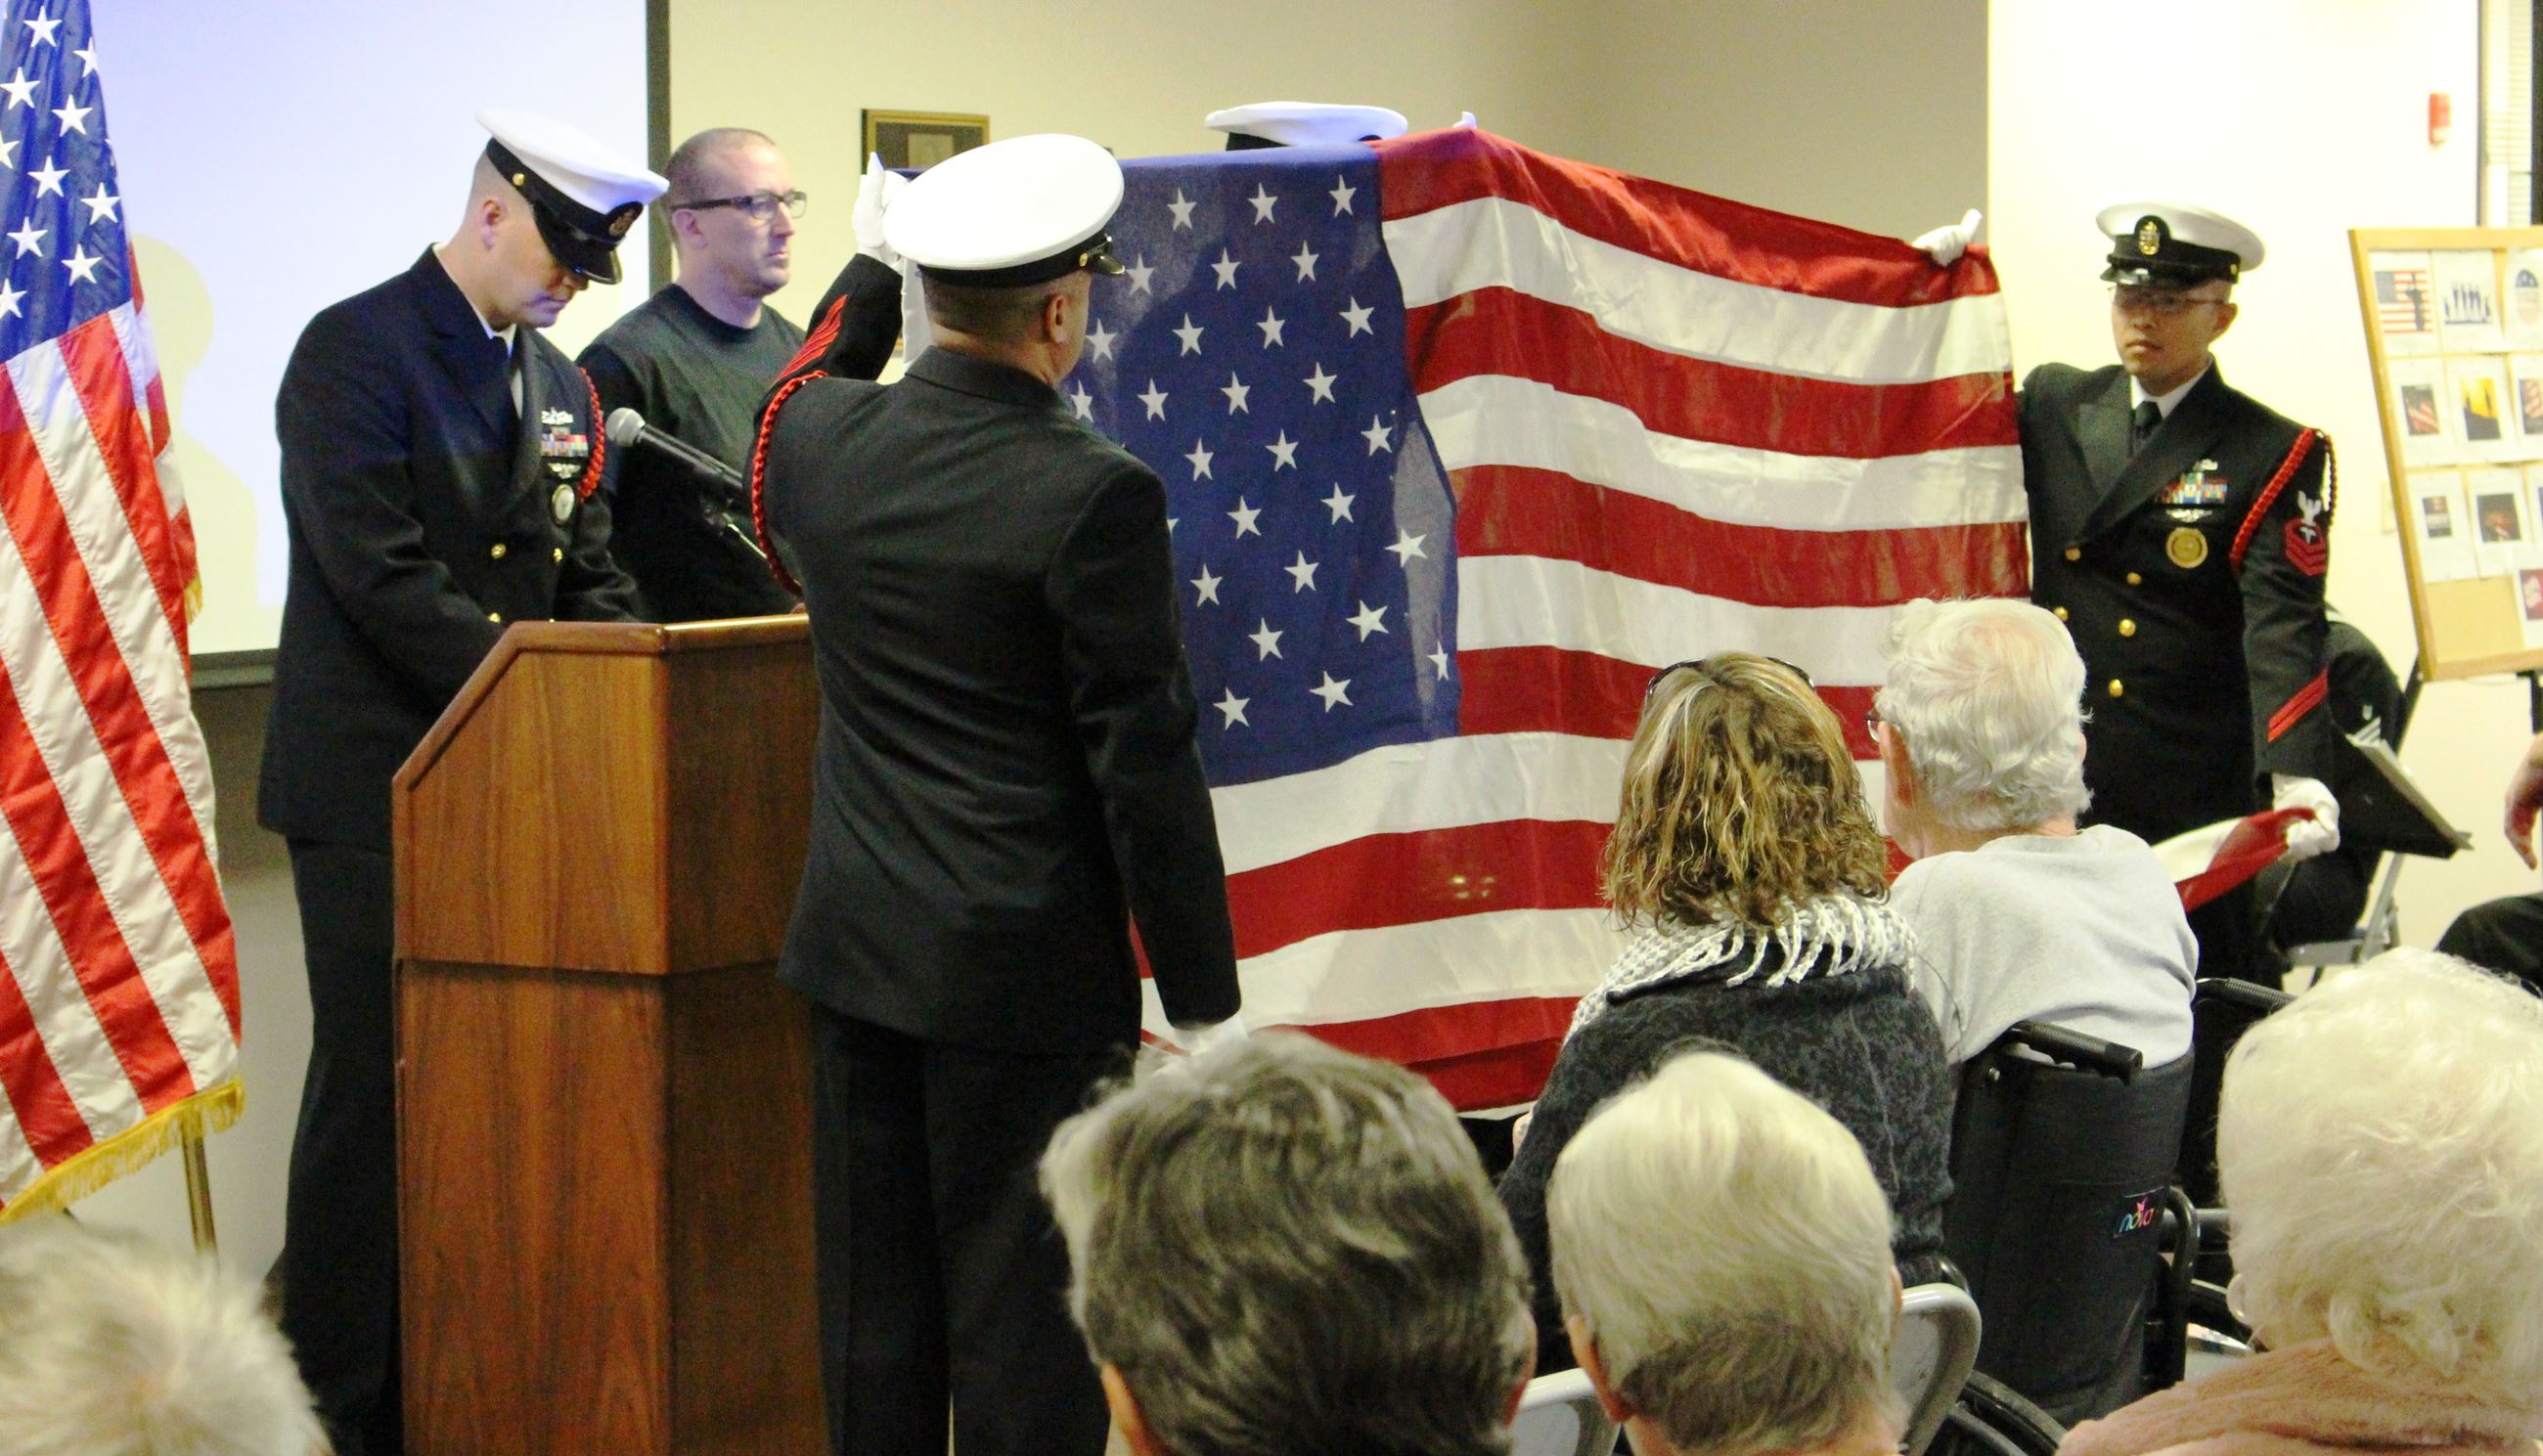 Flag presentation at 2018 Kenosha County Veterans Celebration